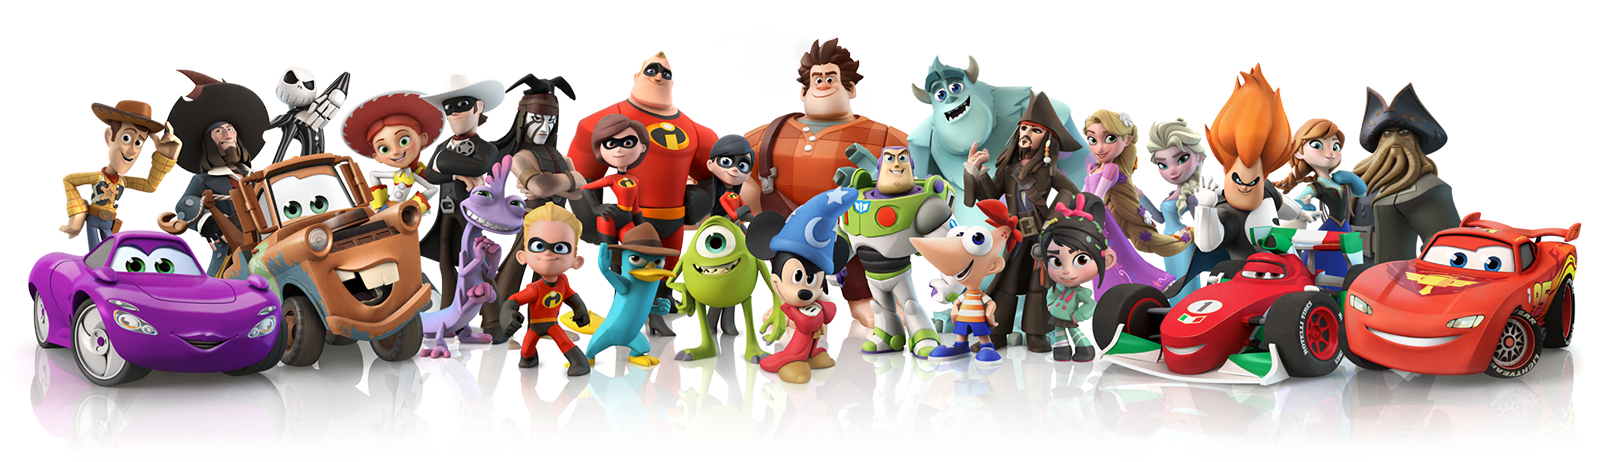 Personagens diversos de animações e filmes hollywoodianos